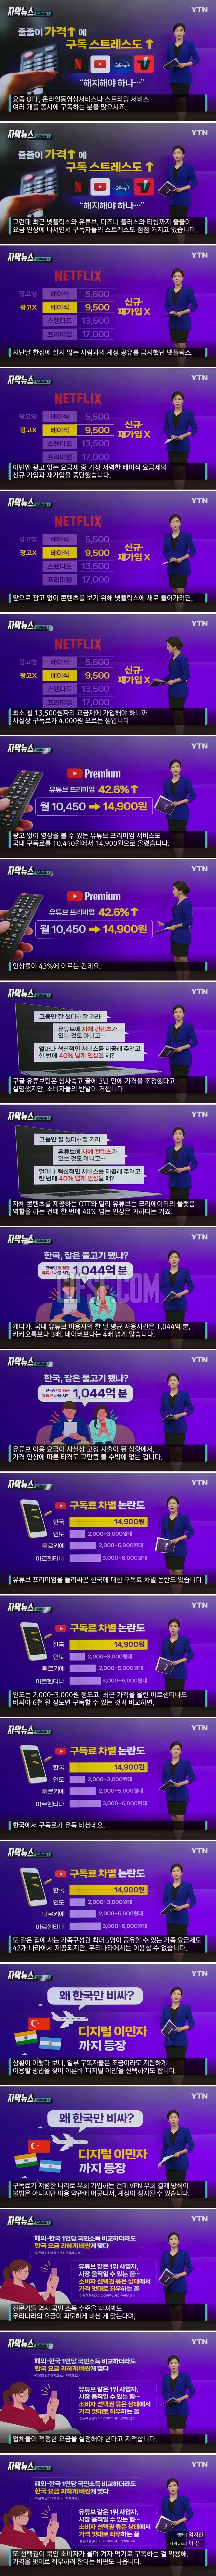 ',한국인만 차별', 논란에.속속 떠나는 사람들.jpg